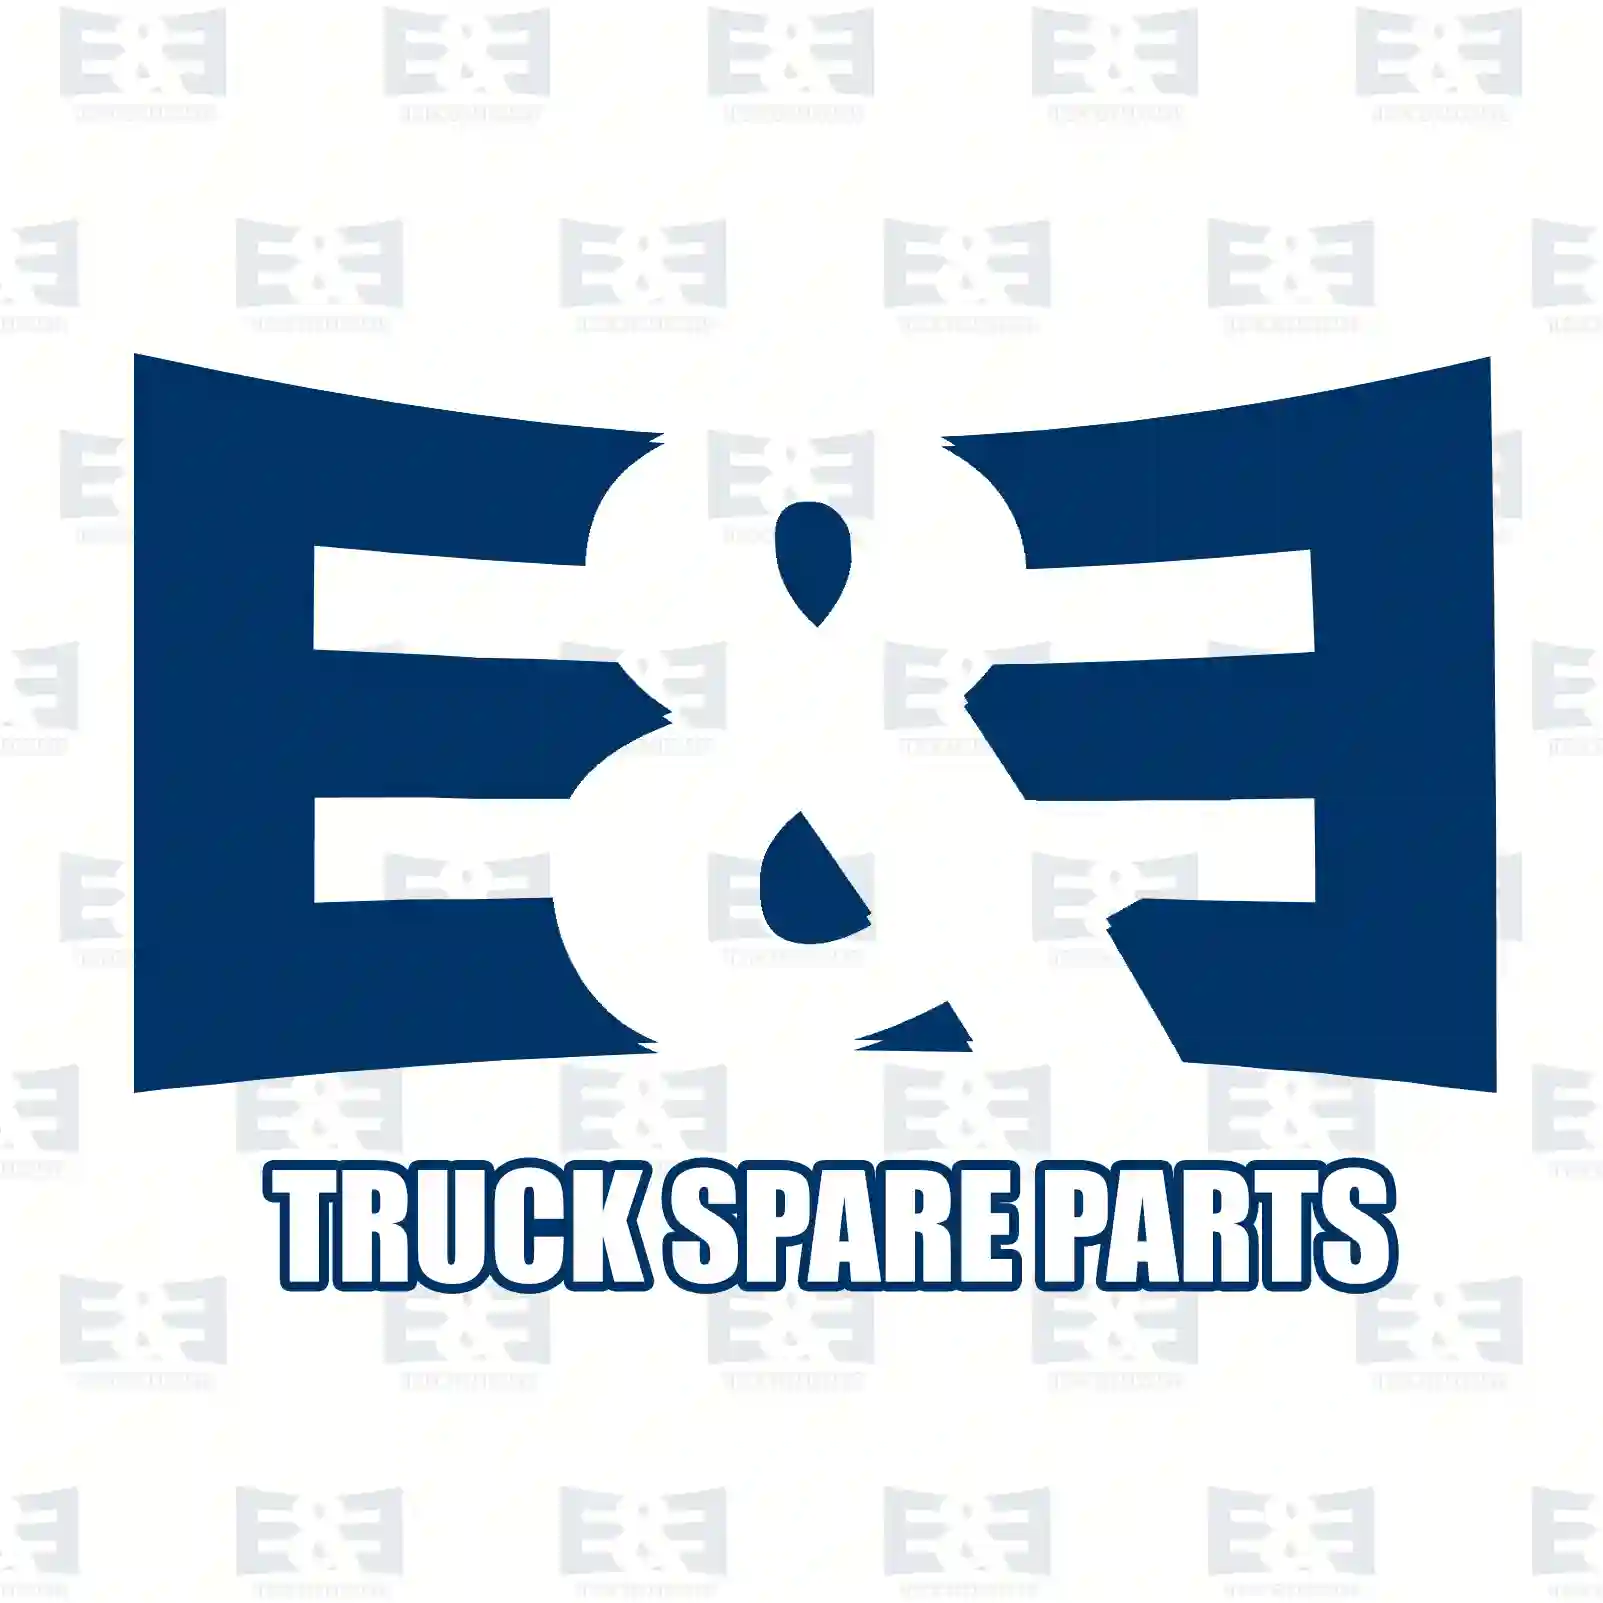 Brake drum, 2E2297156, MBD2056, 1590146, 352787, 362172, , , ||  2E2297156 E&E Truck Spare Parts | Truck Spare Parts, Auotomotive Spare Parts Brake drum, 2E2297156, MBD2056, 1590146, 352787, 362172, , , ||  2E2297156 E&E Truck Spare Parts | Truck Spare Parts, Auotomotive Spare Parts